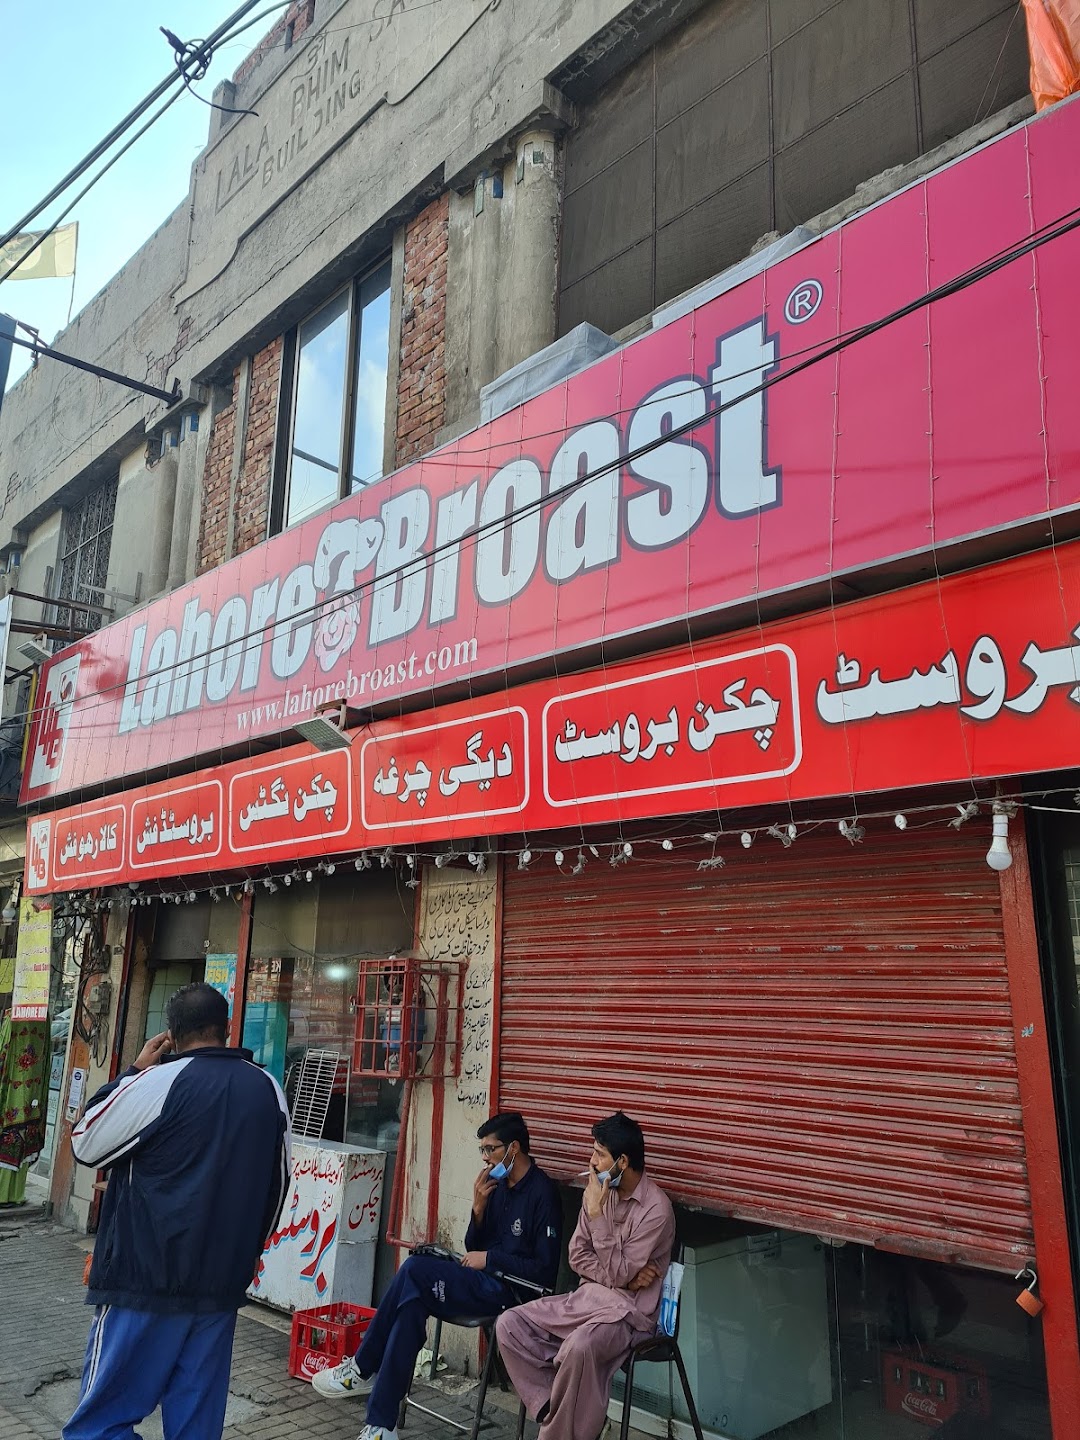 Lahore Broast